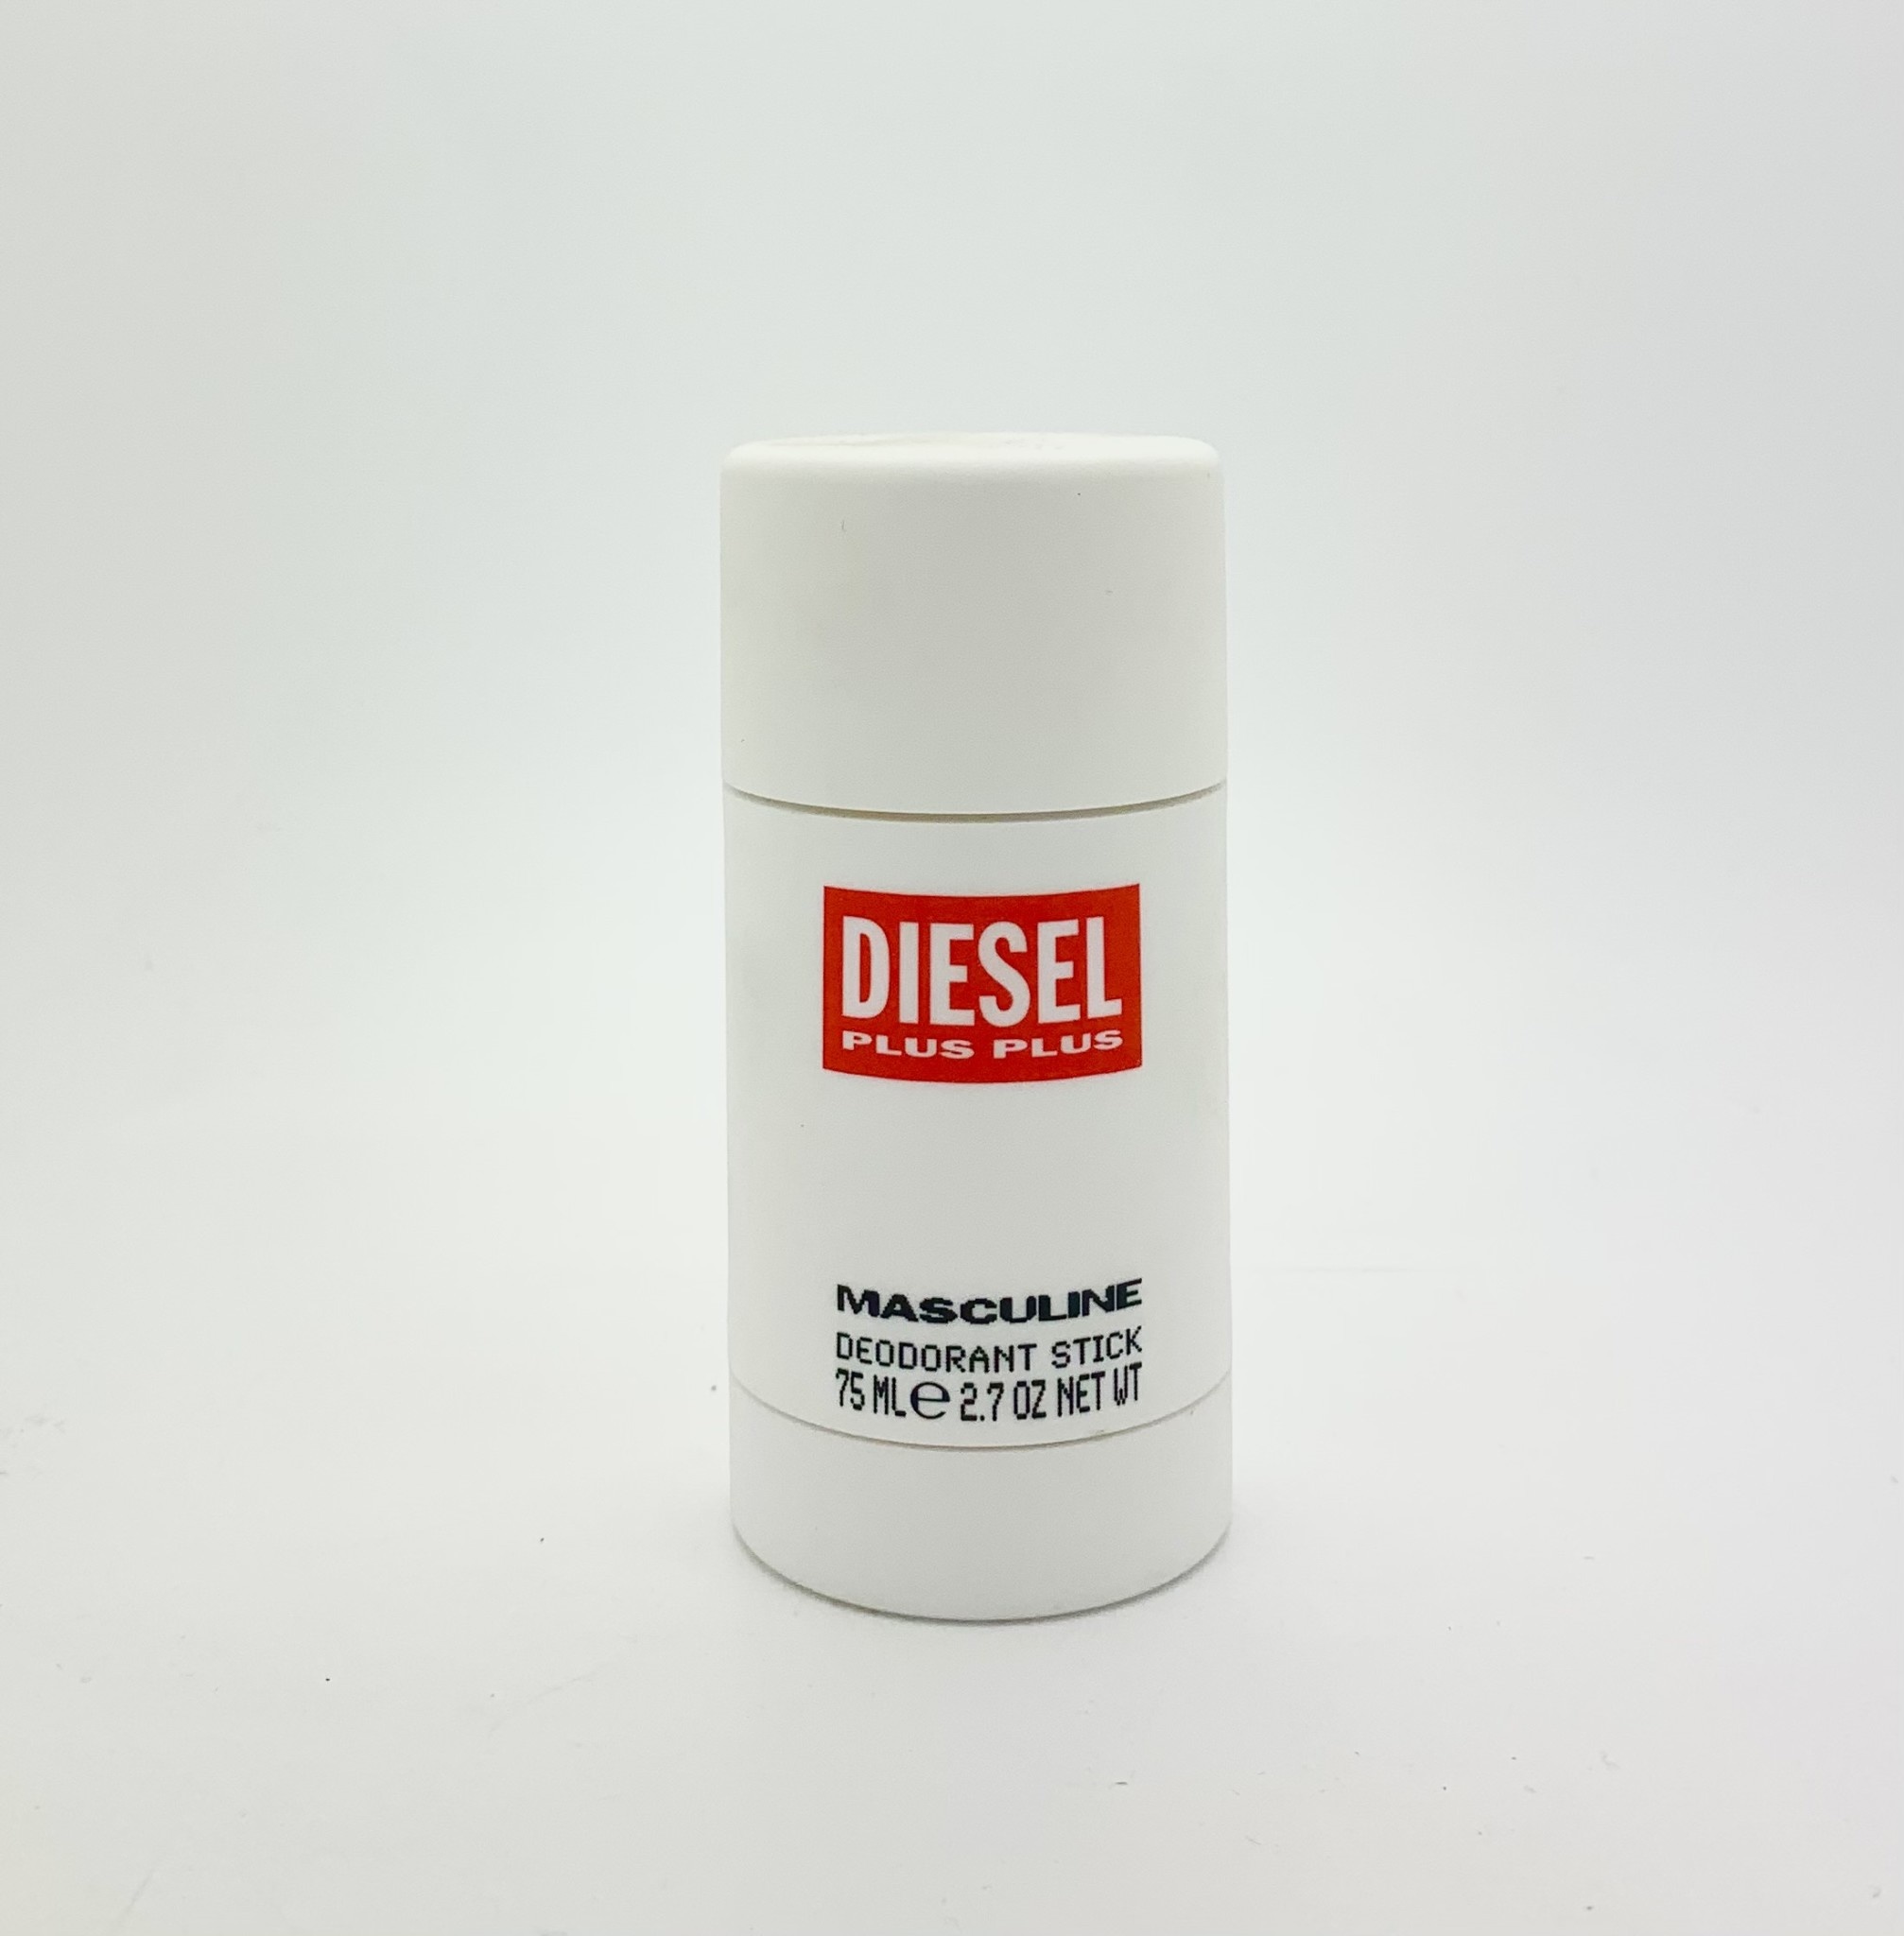 Le Parfumier - Diesel Plus Plus For Deodorant - Parfumier Perfume Store